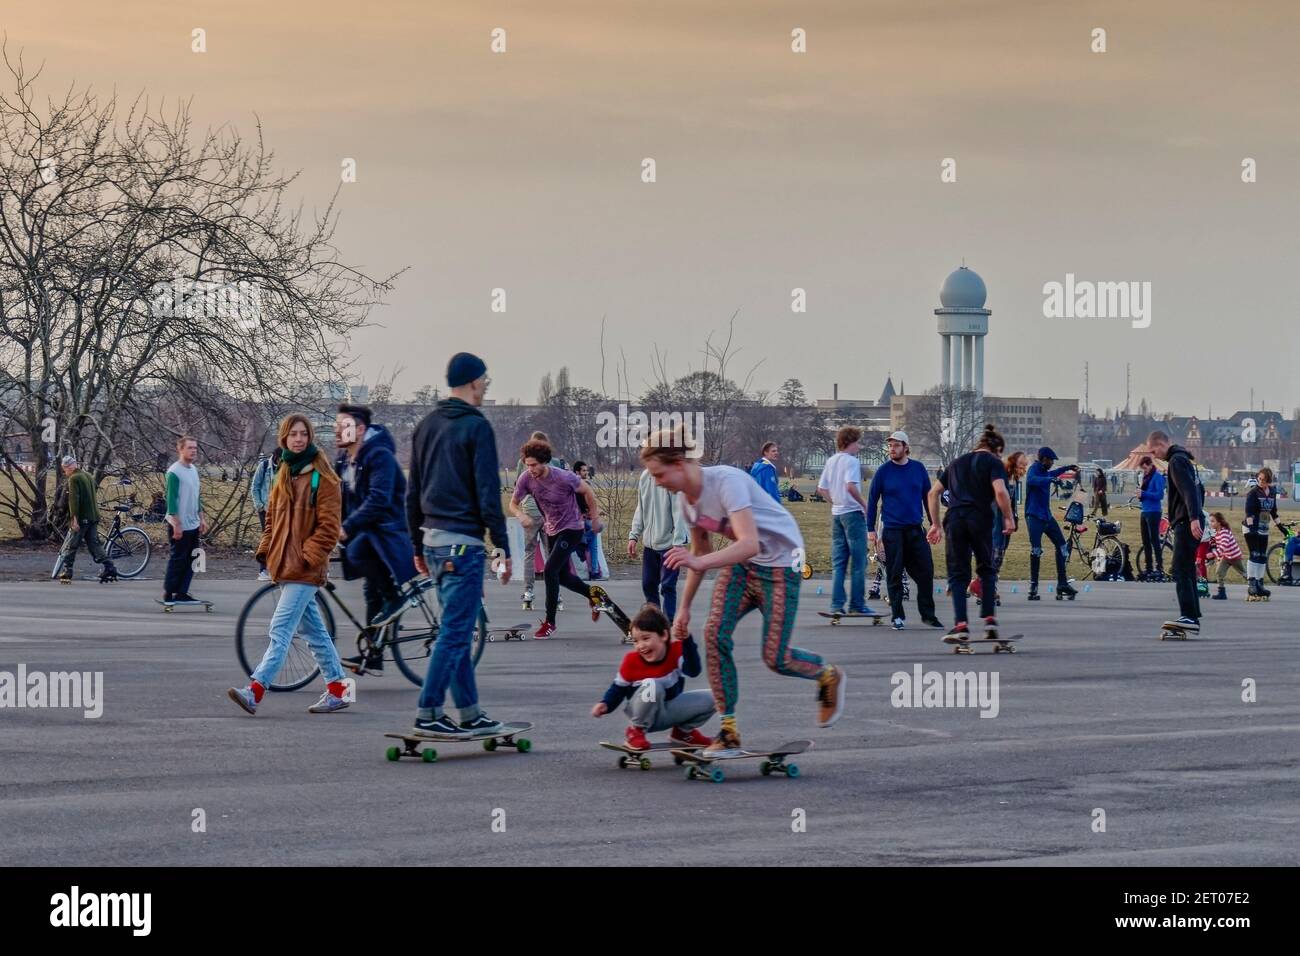 Vorfruehling Mitte Februar 2021 in Berlin, Tempelhofer Feld, Menschen bei Freizeitaktivitaeten  auf der Startbahn und Landebahn auf dem ehemaligen Flu Stock Photo